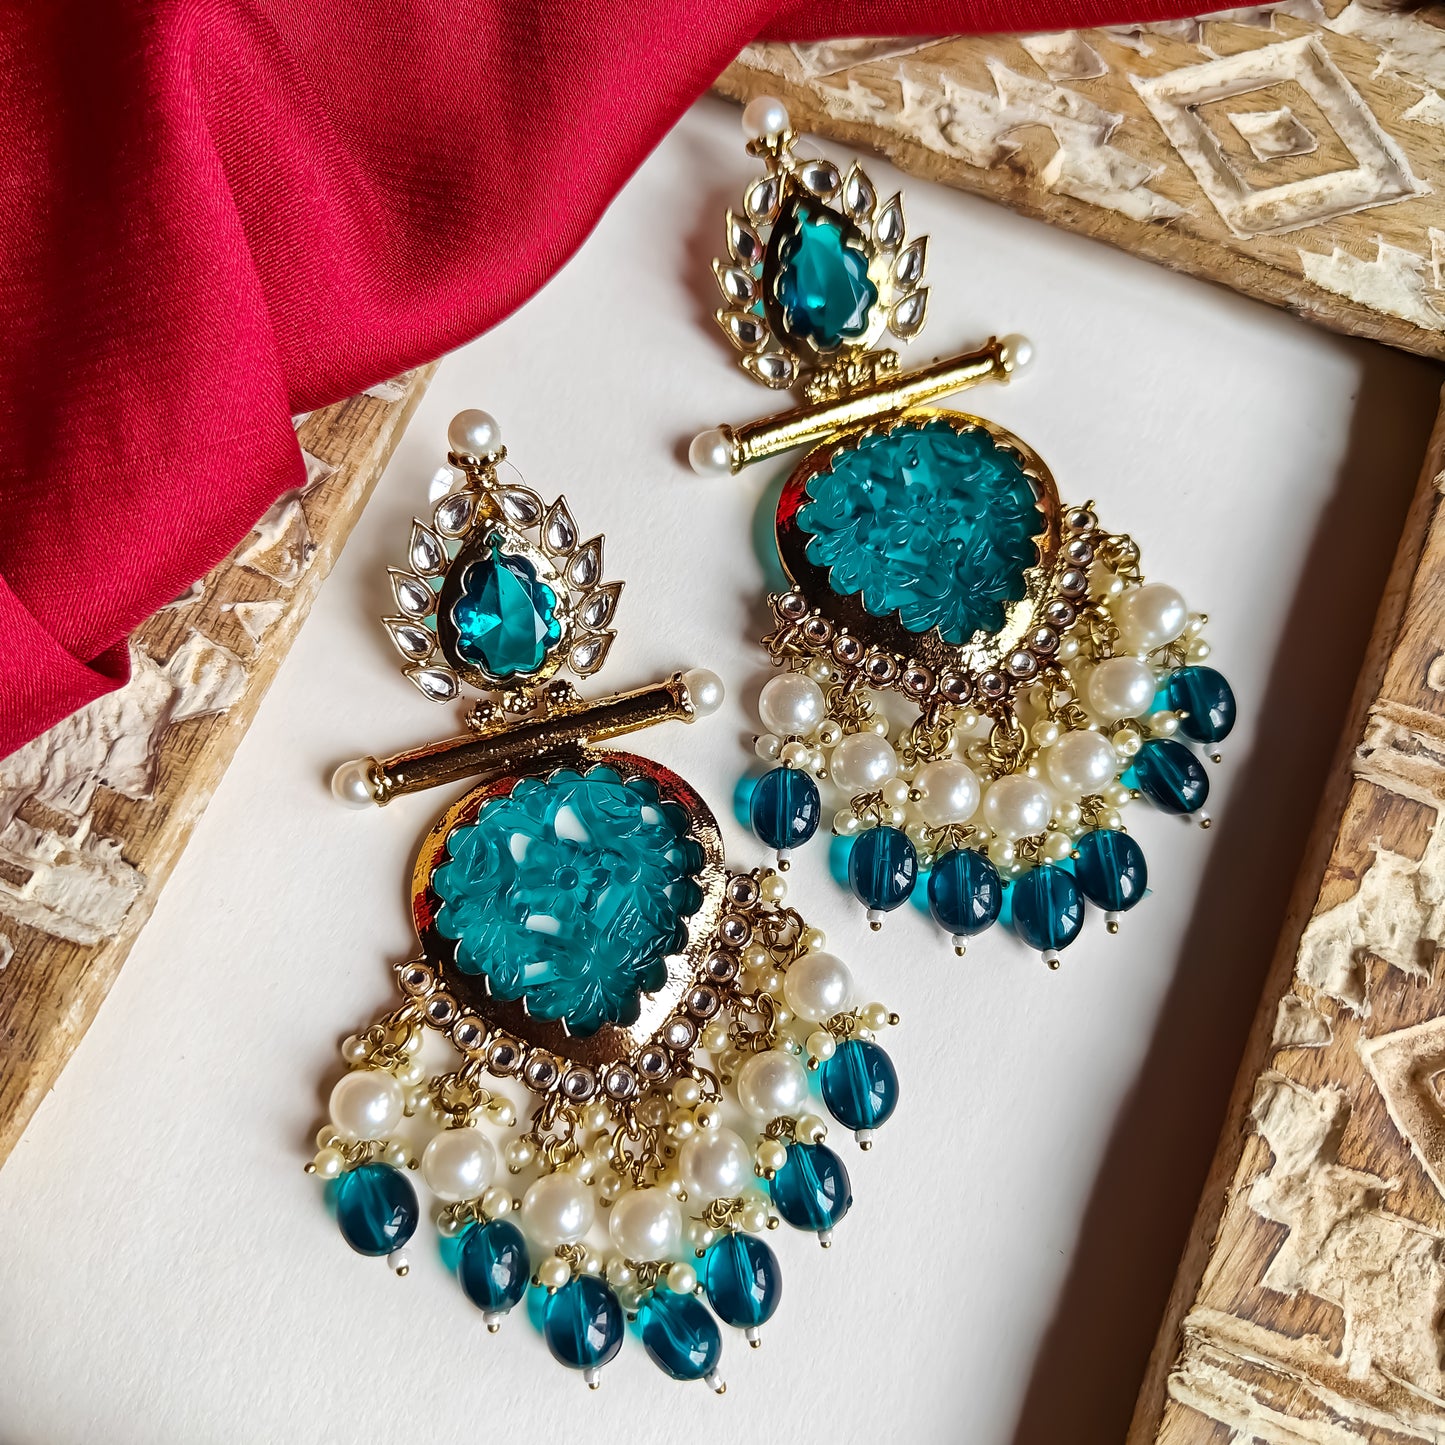 Shagun Cutwork Chandbali Earrings - Peacock Blue